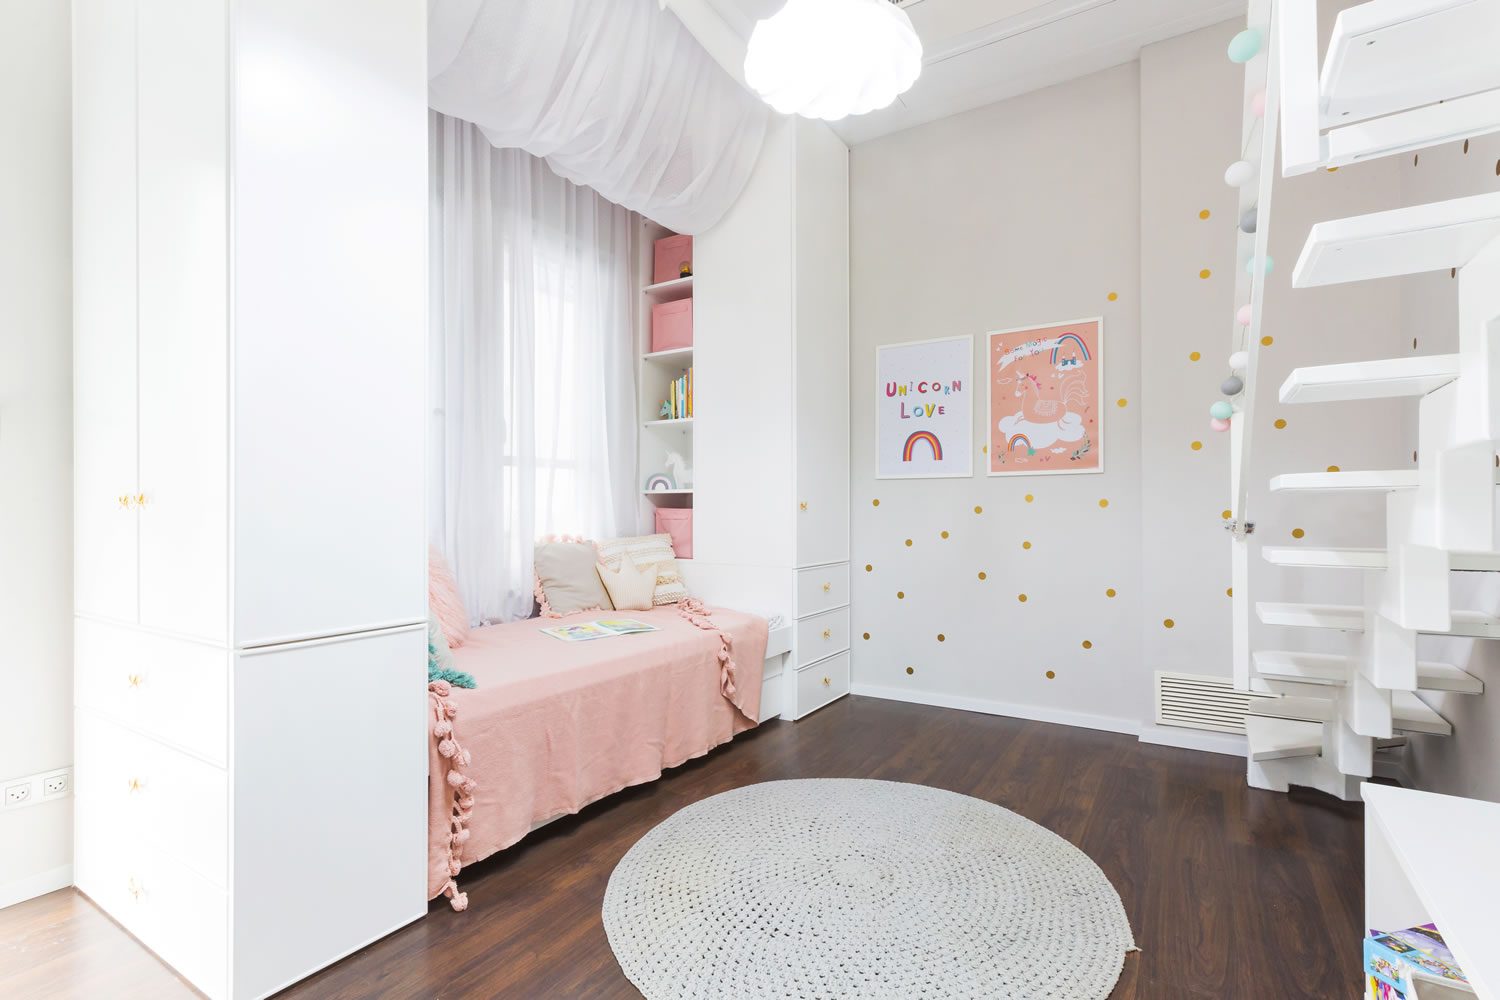 עיצוב וסטיילינג לחדר ילדה חלומי בגווני ורוד פודרה, לבן וזהב.